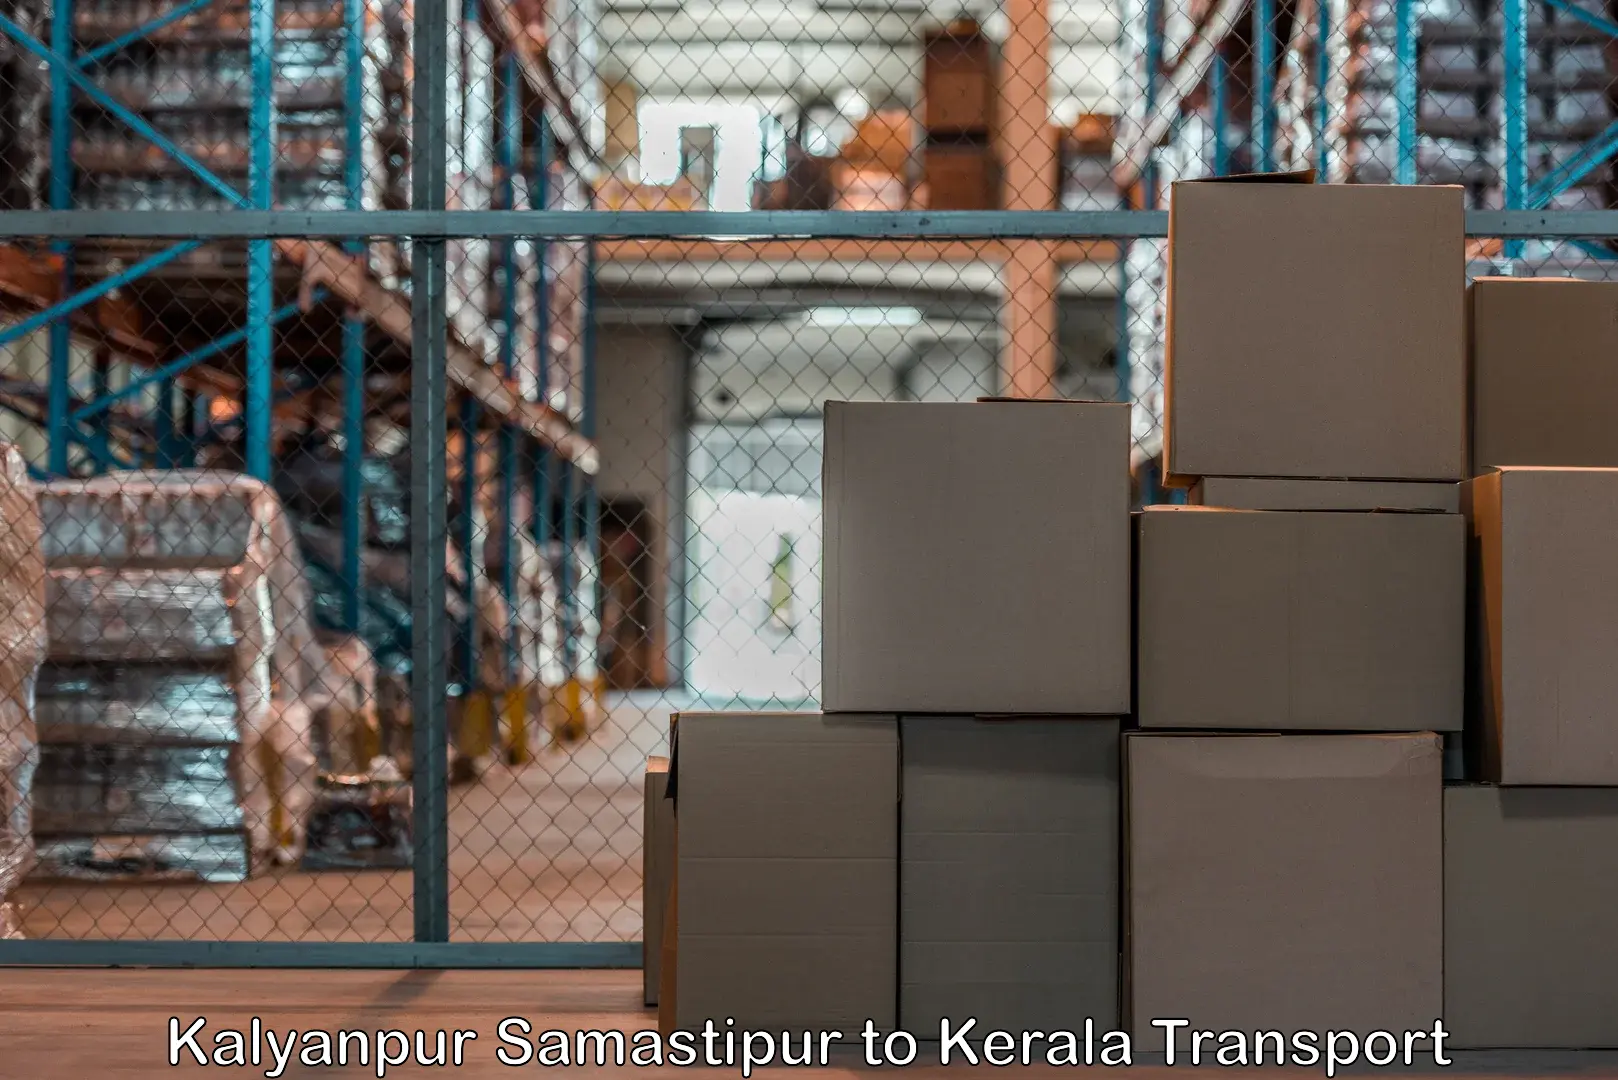 Interstate transport services Kalyanpur Samastipur to Kerala